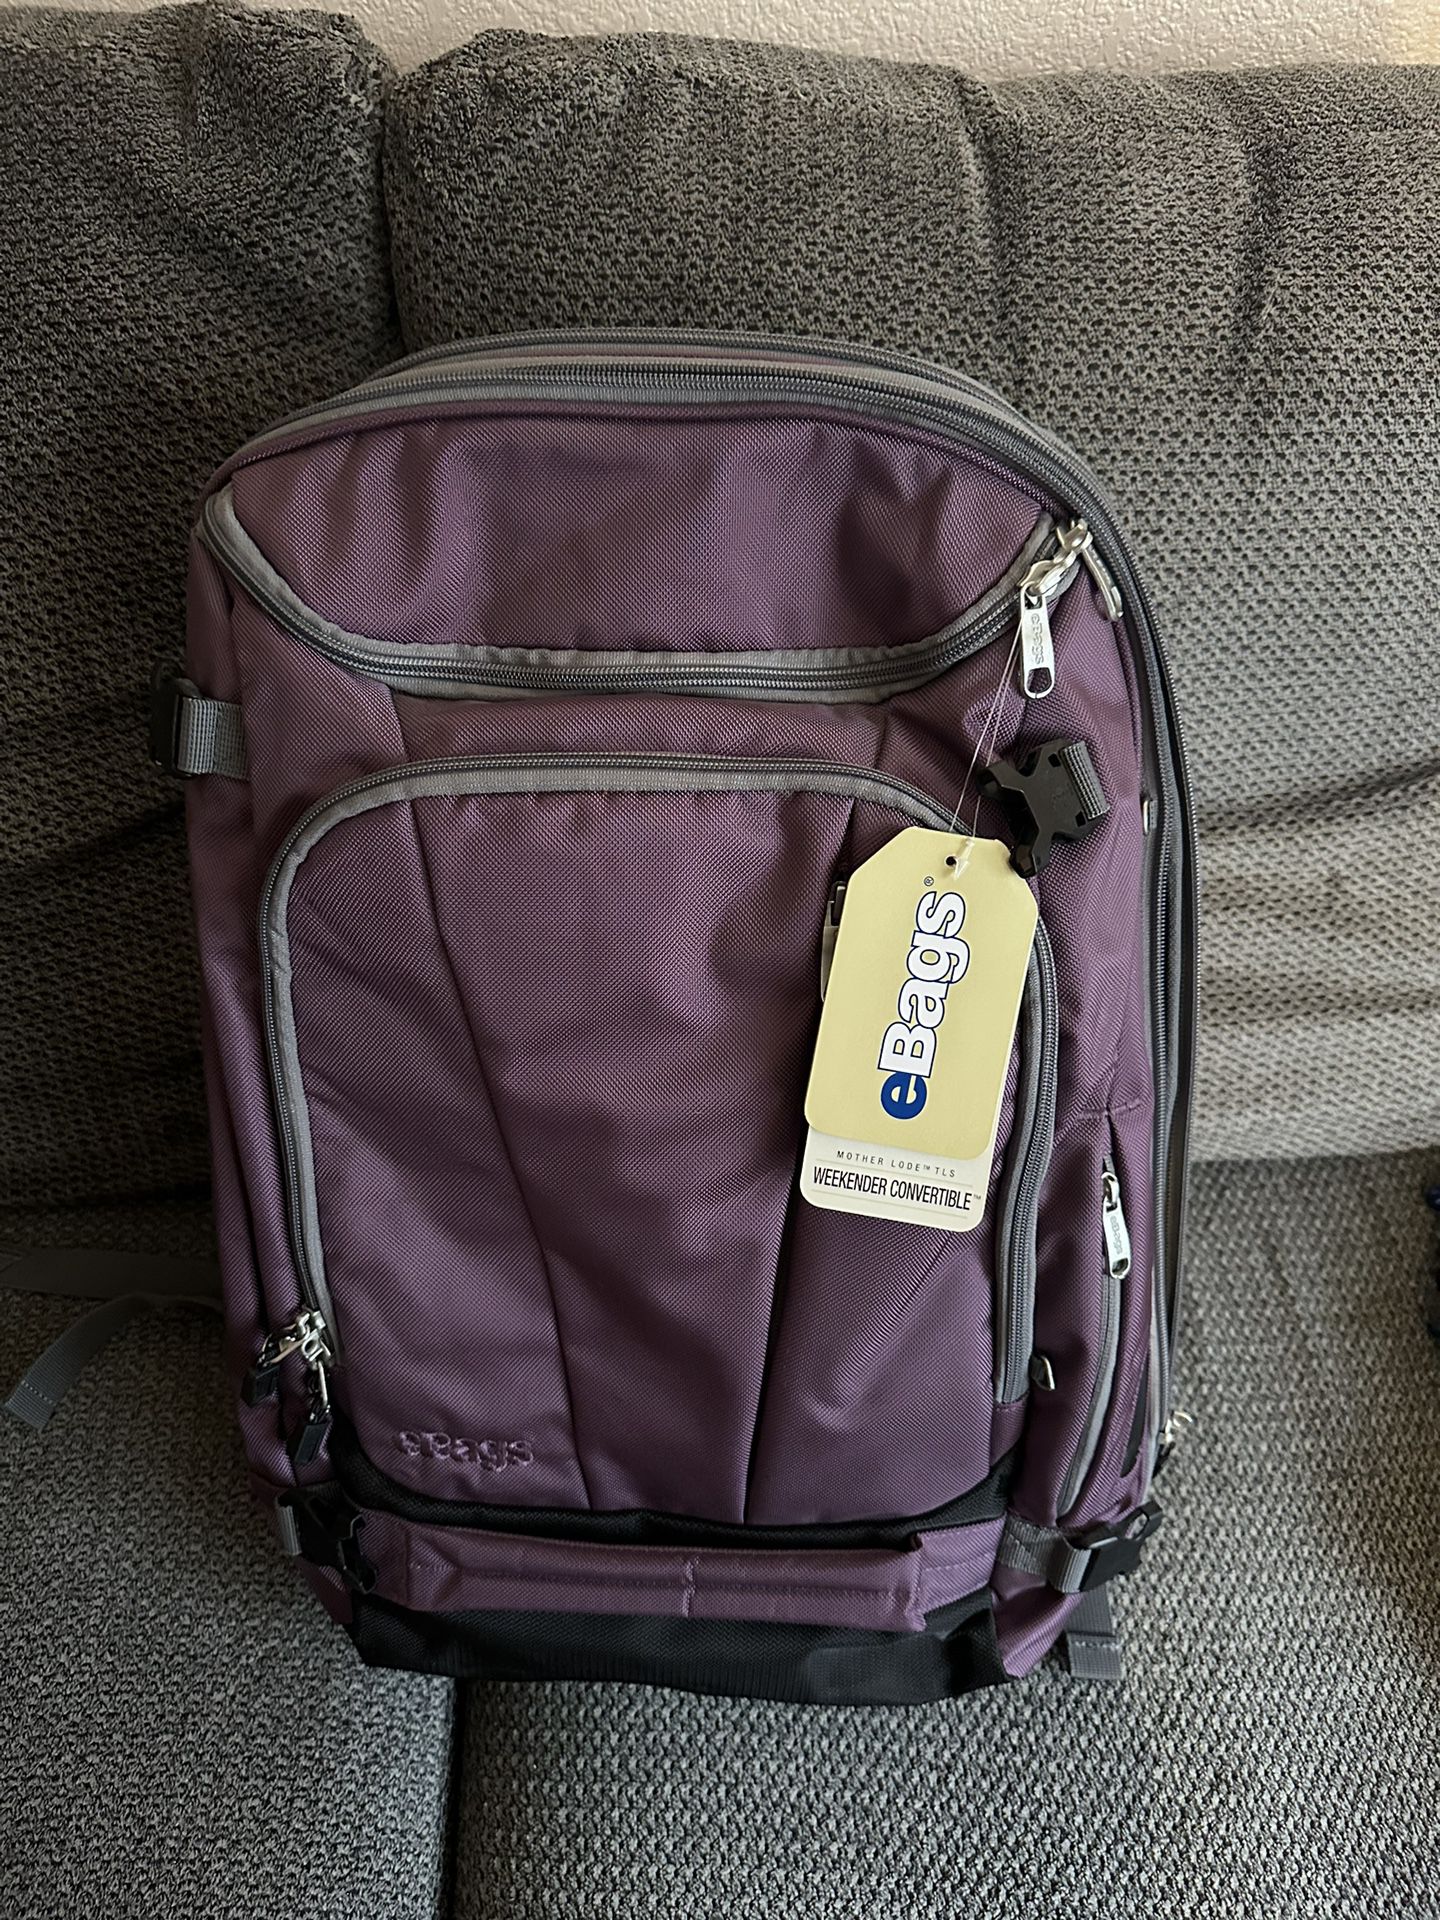 eBags Motherlode Travel Backpack